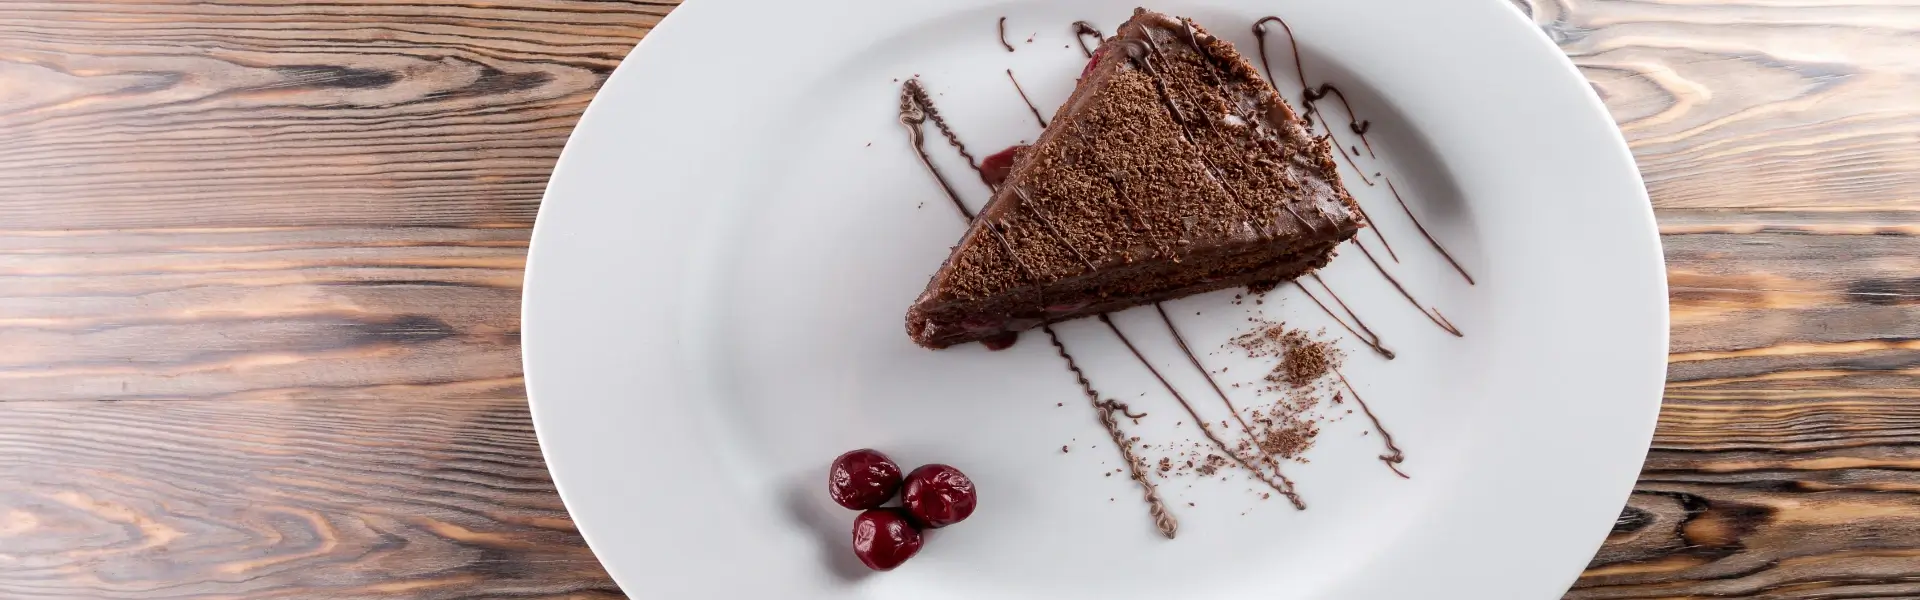 עוגת שוקולד 10 דקות